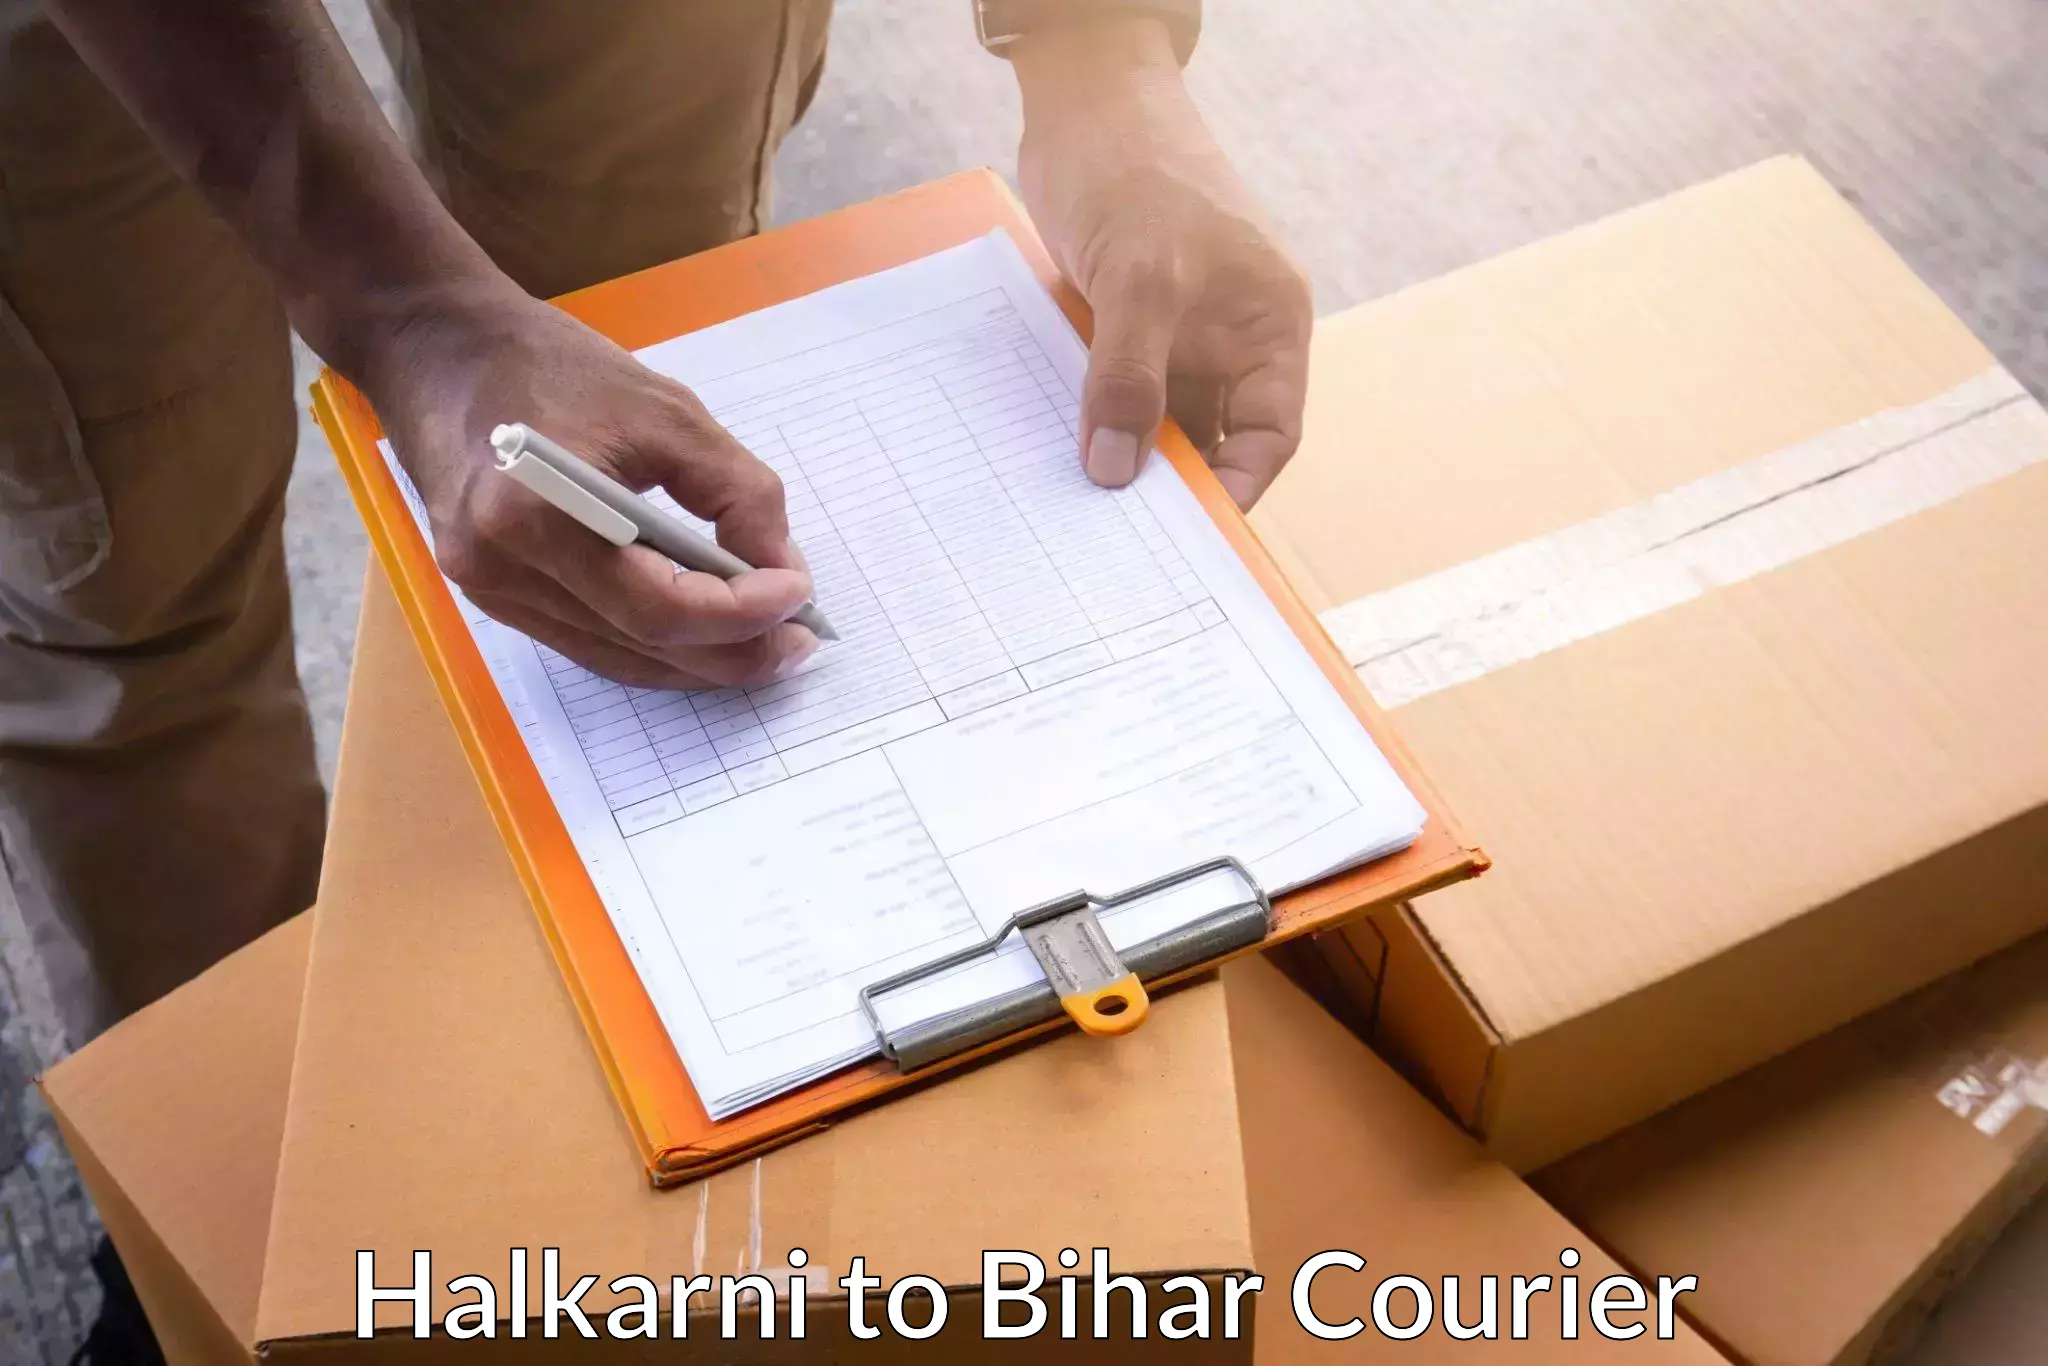 Package delivery network Halkarni to Mashrakh